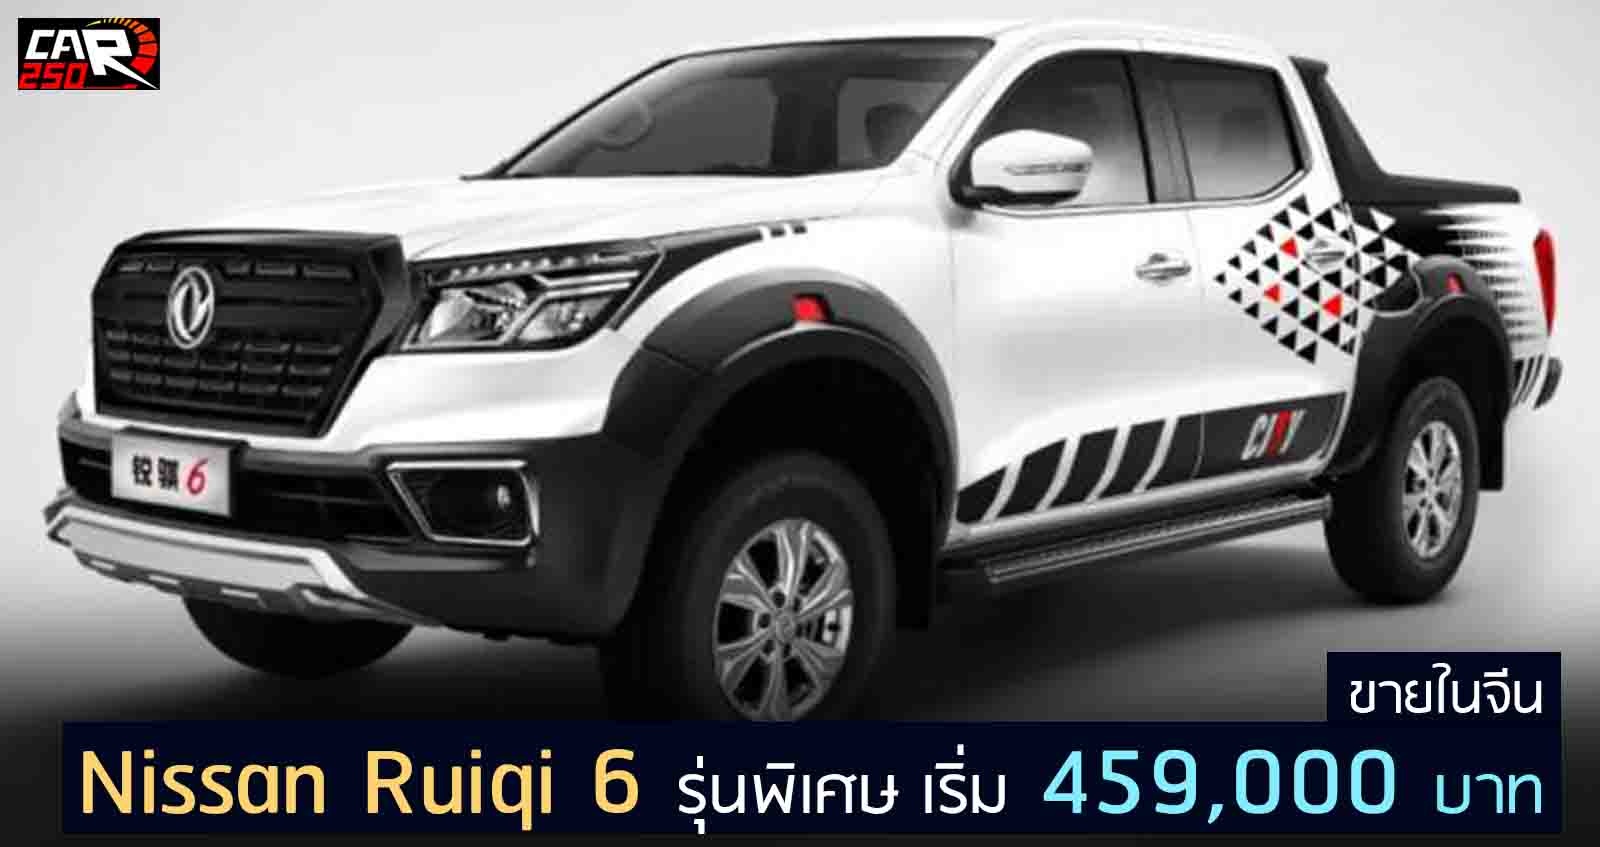 Nissan Ruiqi 6 City Edition รุ่นพิเศษ เริ่ม 459,000 บาบในจีน